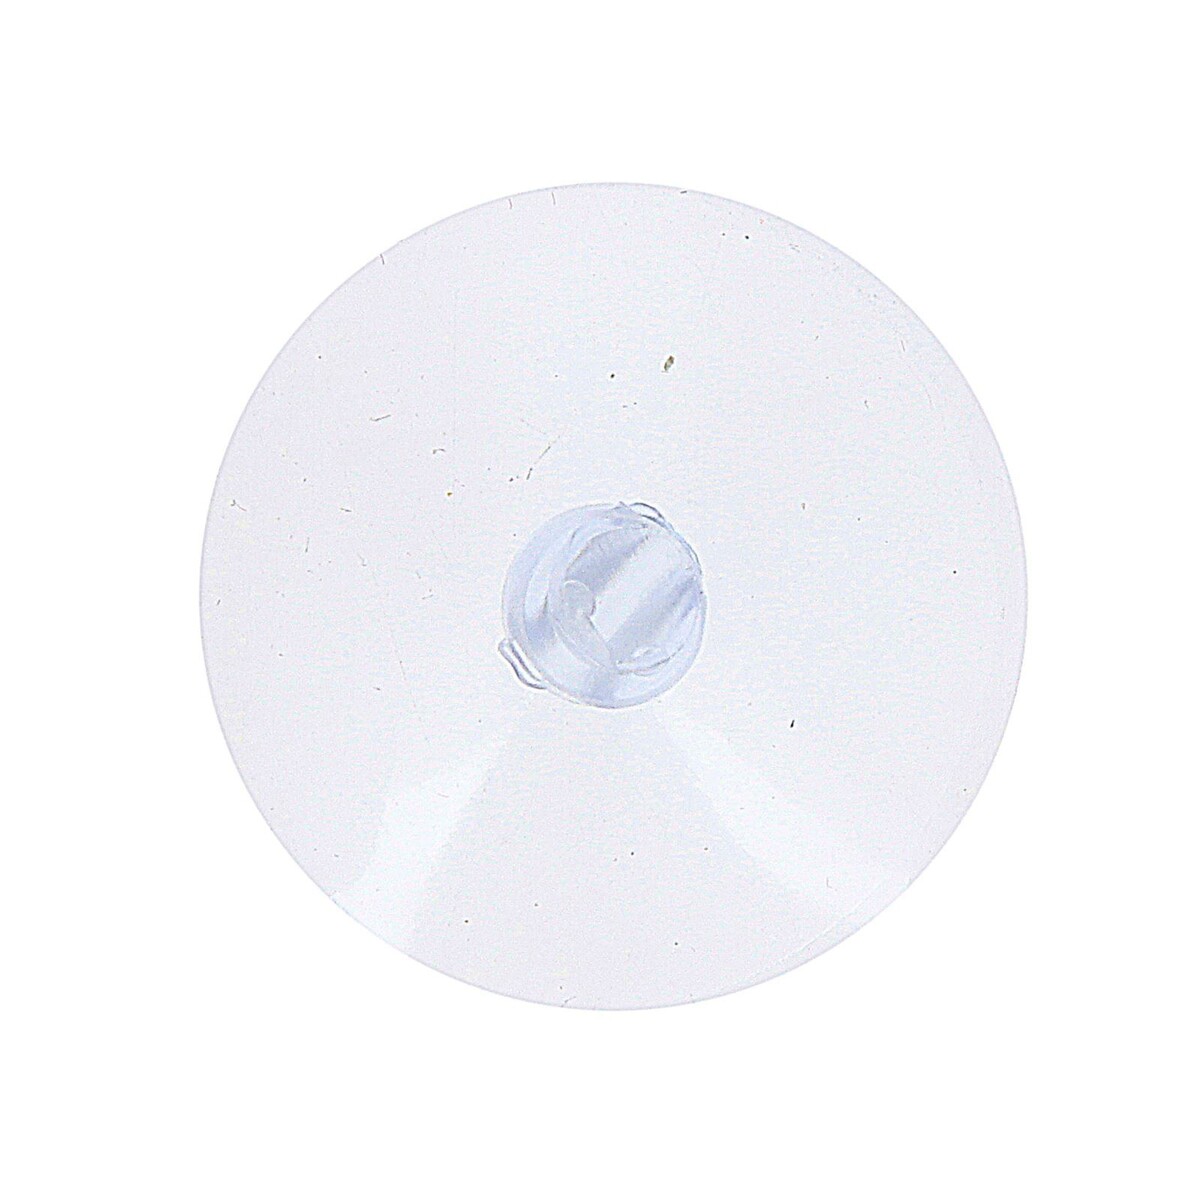 Присоска с дыркой сбоку, набор10 шт., диаметр: 3 см зажим присоска на лобовое стекло